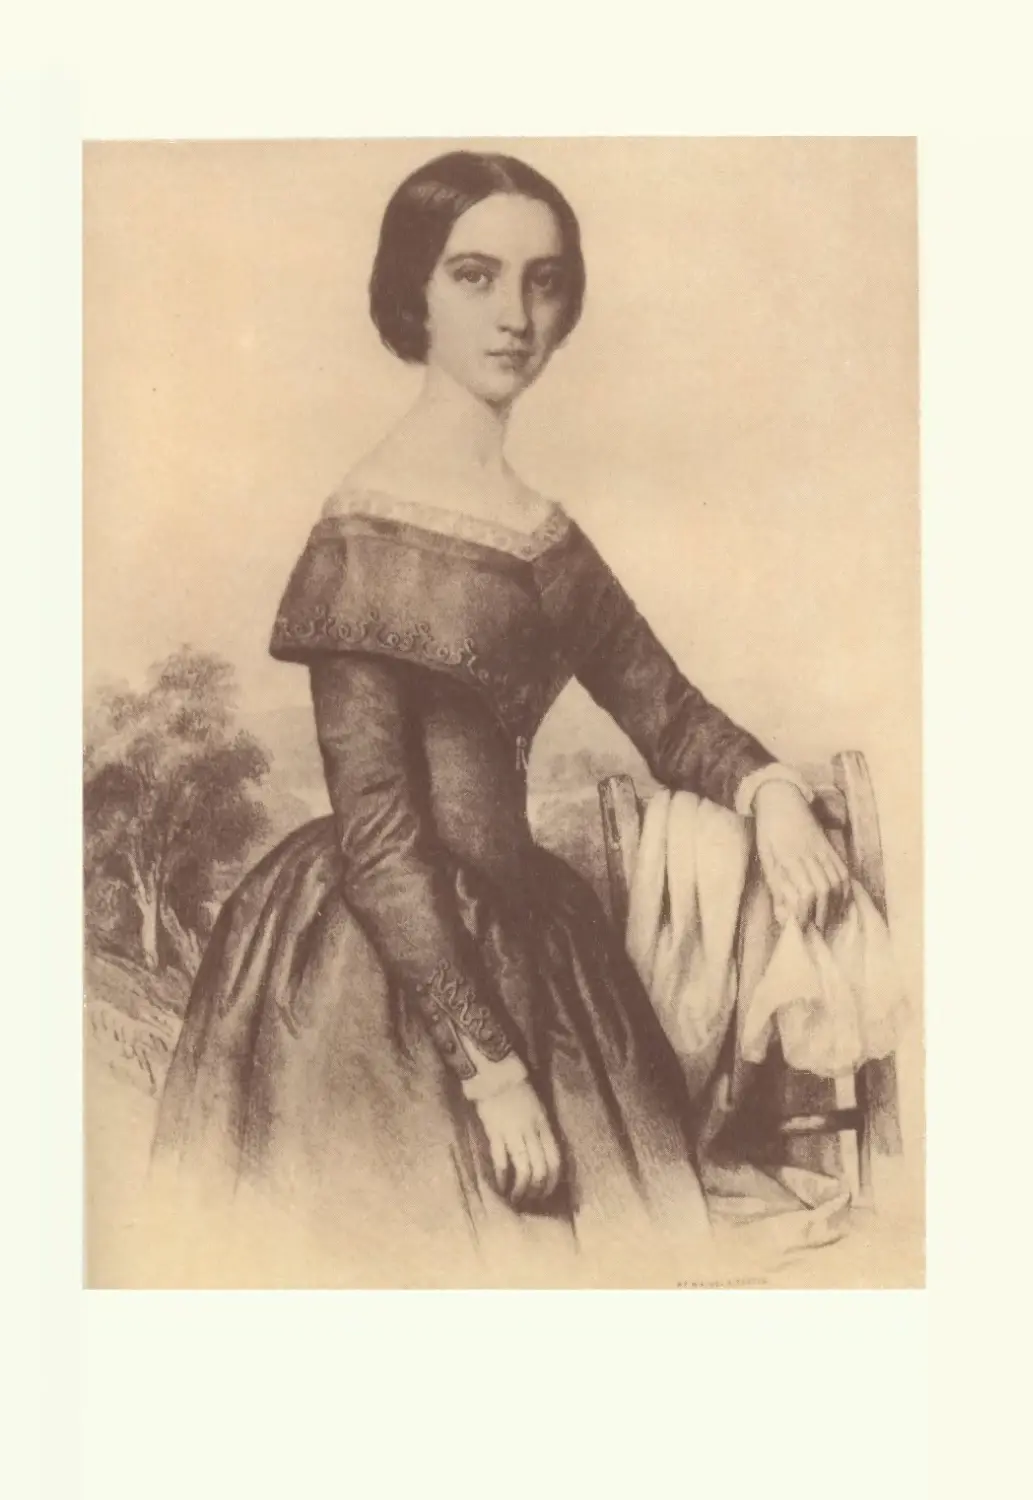 Юлия Сендреи, жена Шандора Петефи. Литография, худ. Миклош Барабаш, 1848 г.